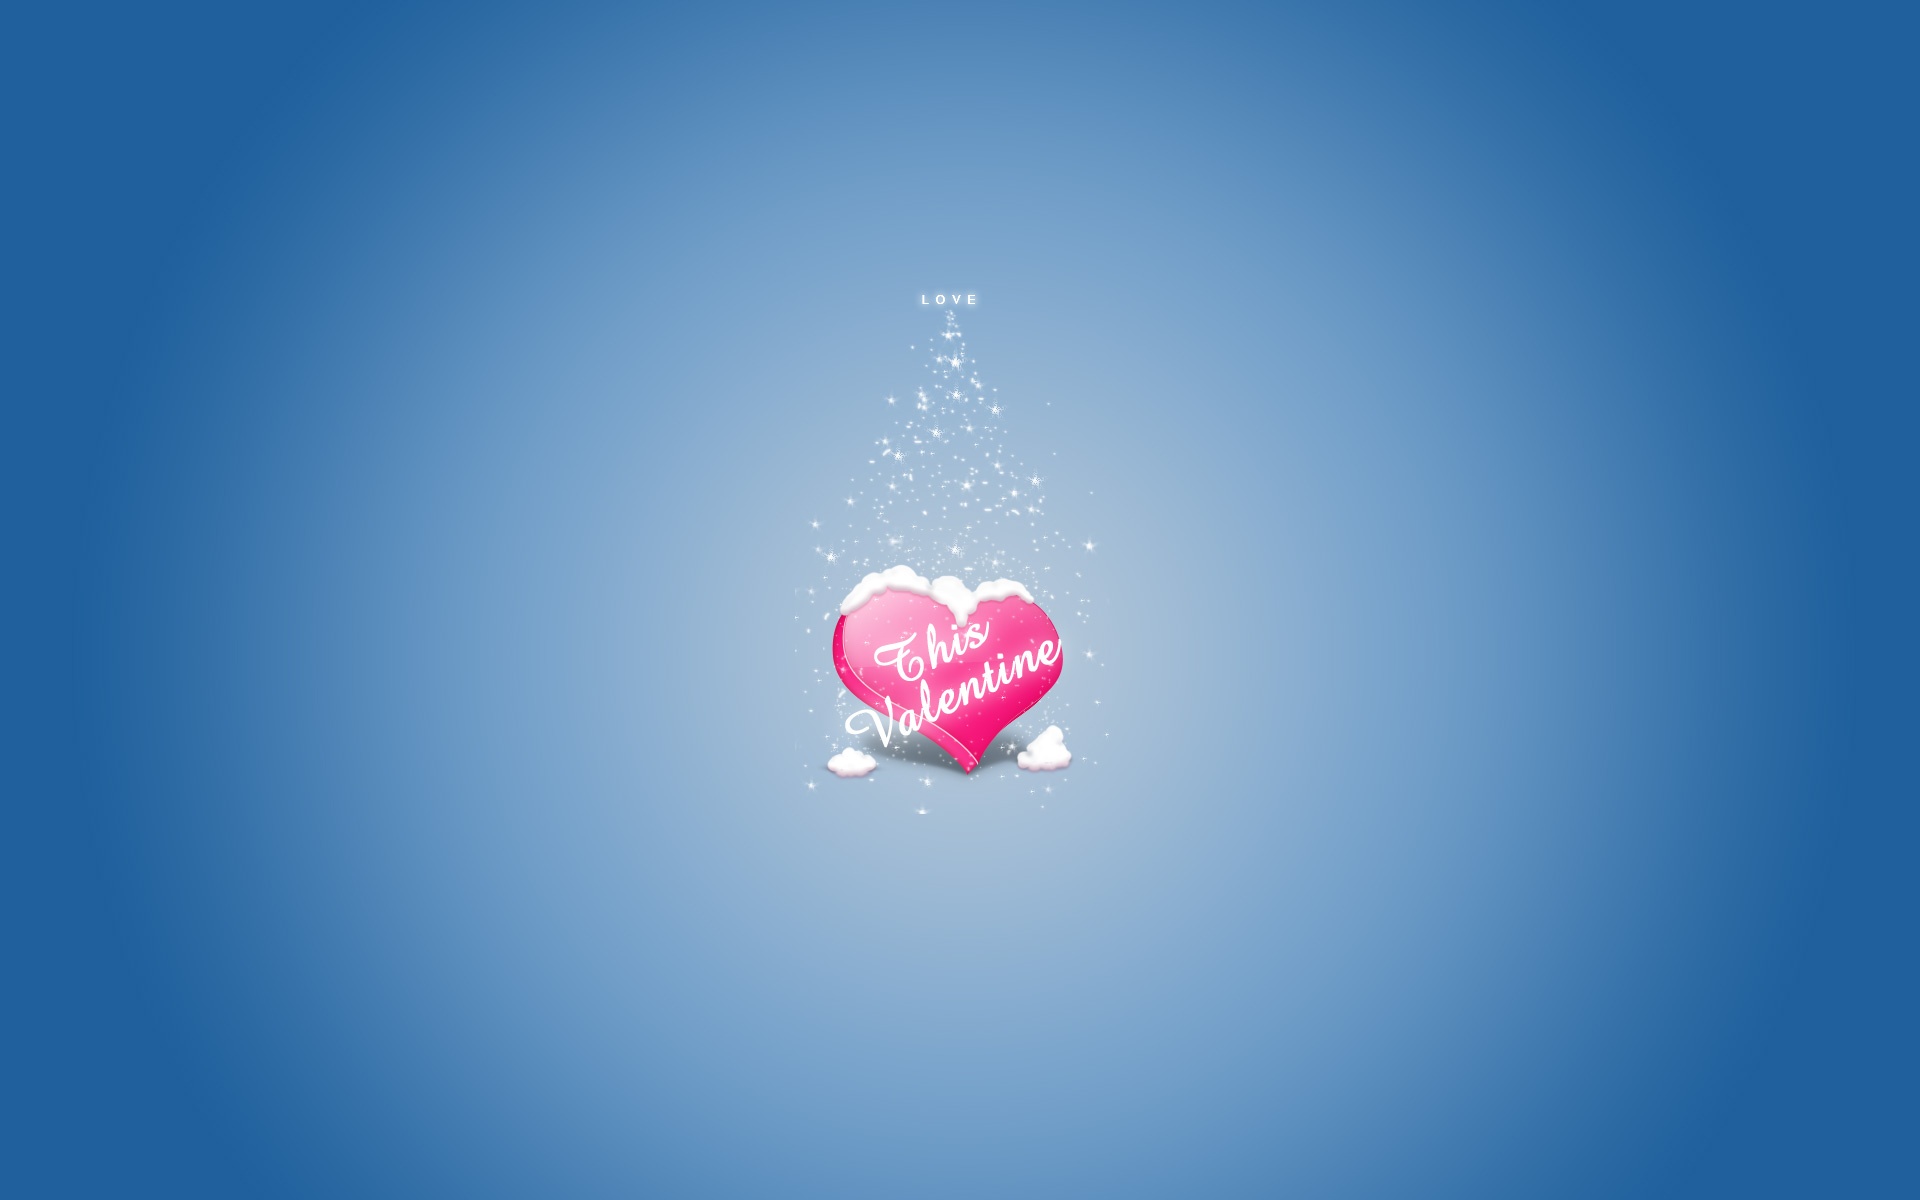 Love blue Valentine wallpaper. Love blue Valentine